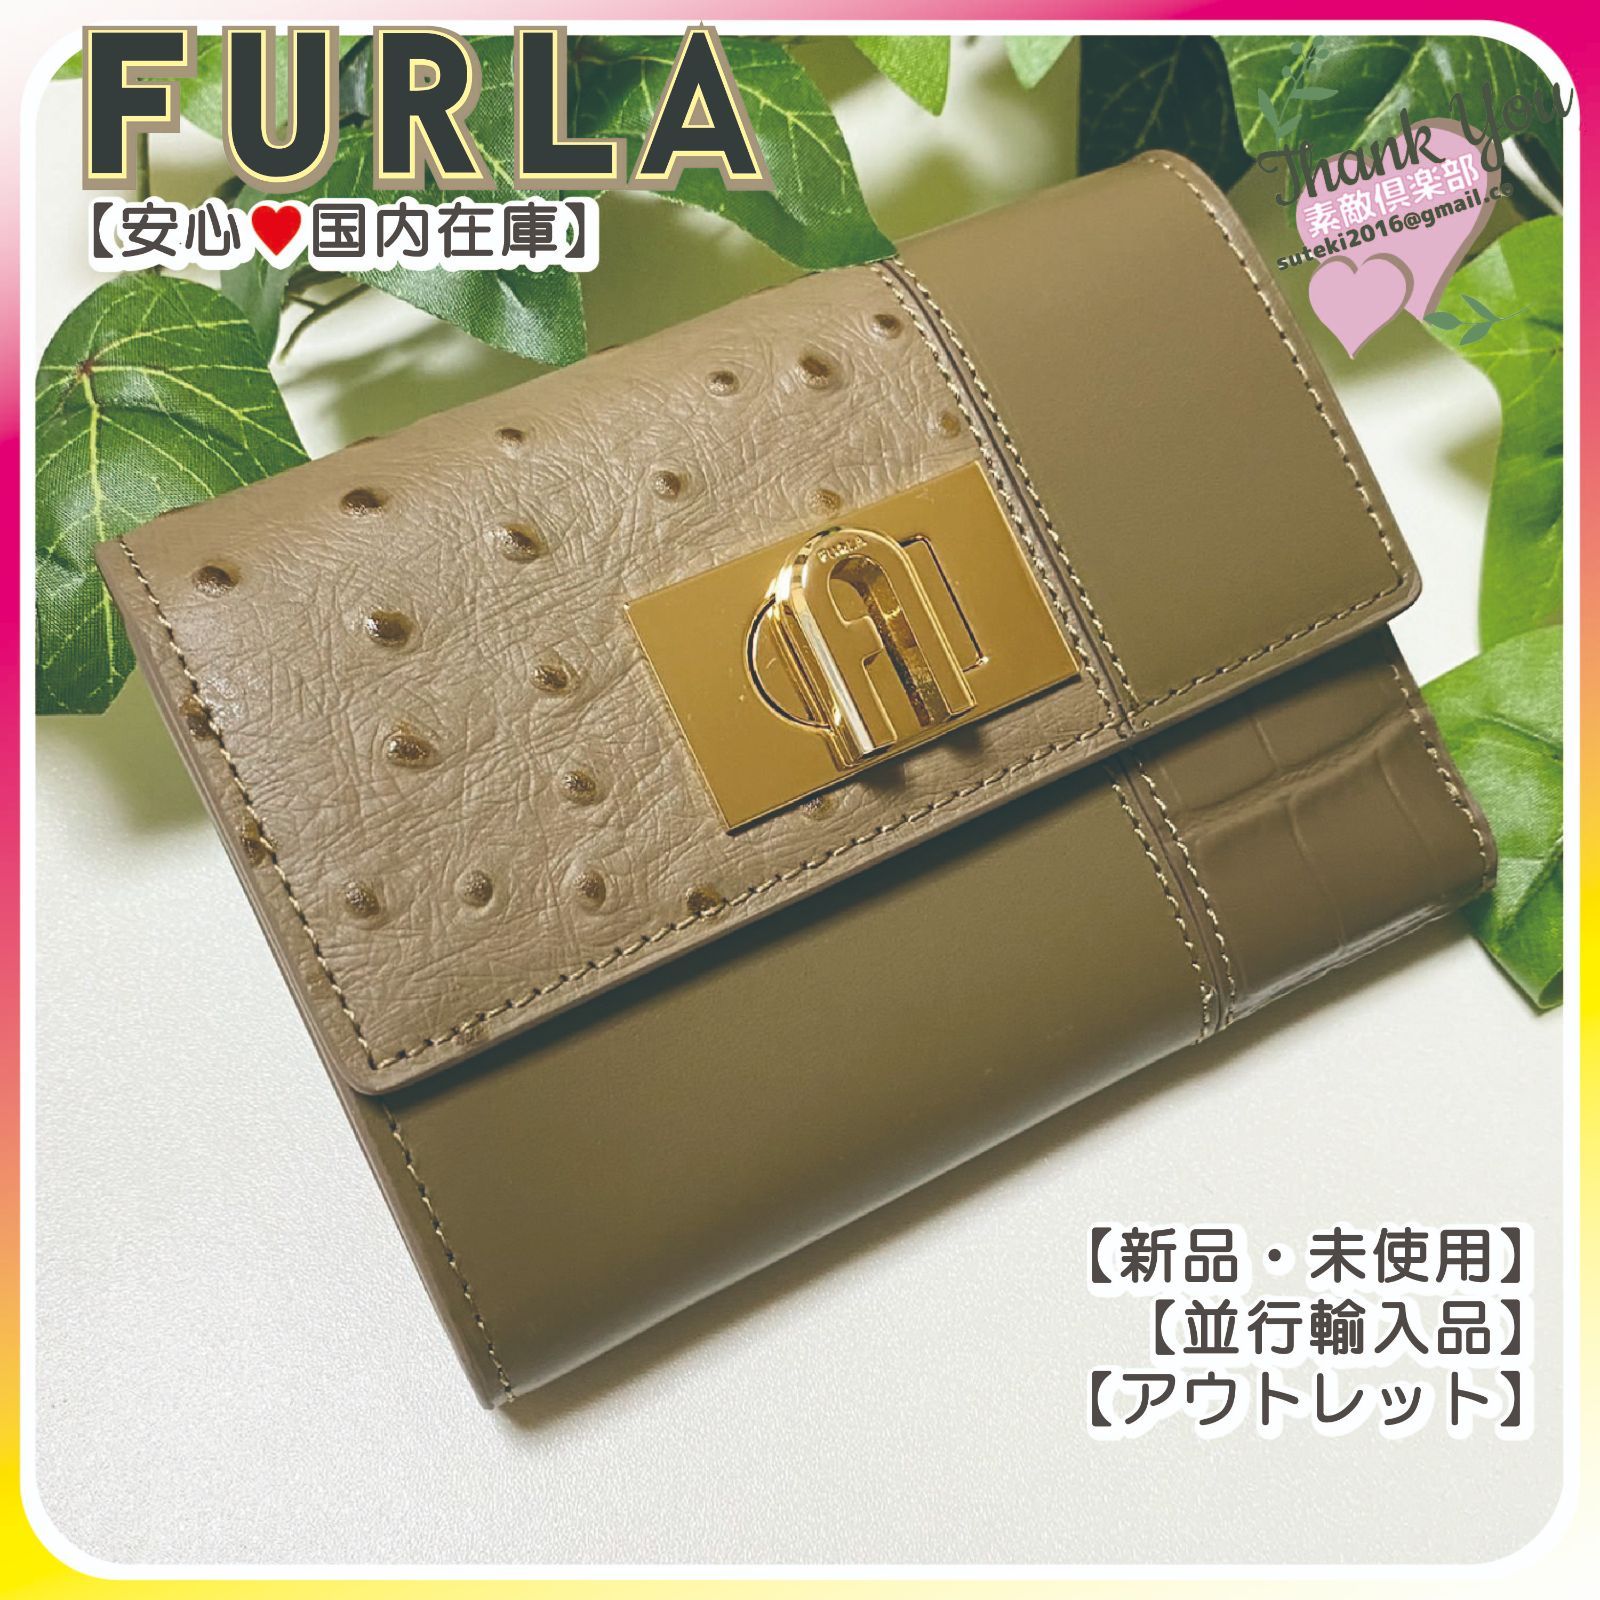 【新品未使用】FURLA フルラ 三つ折り財布 カーキブラウン系